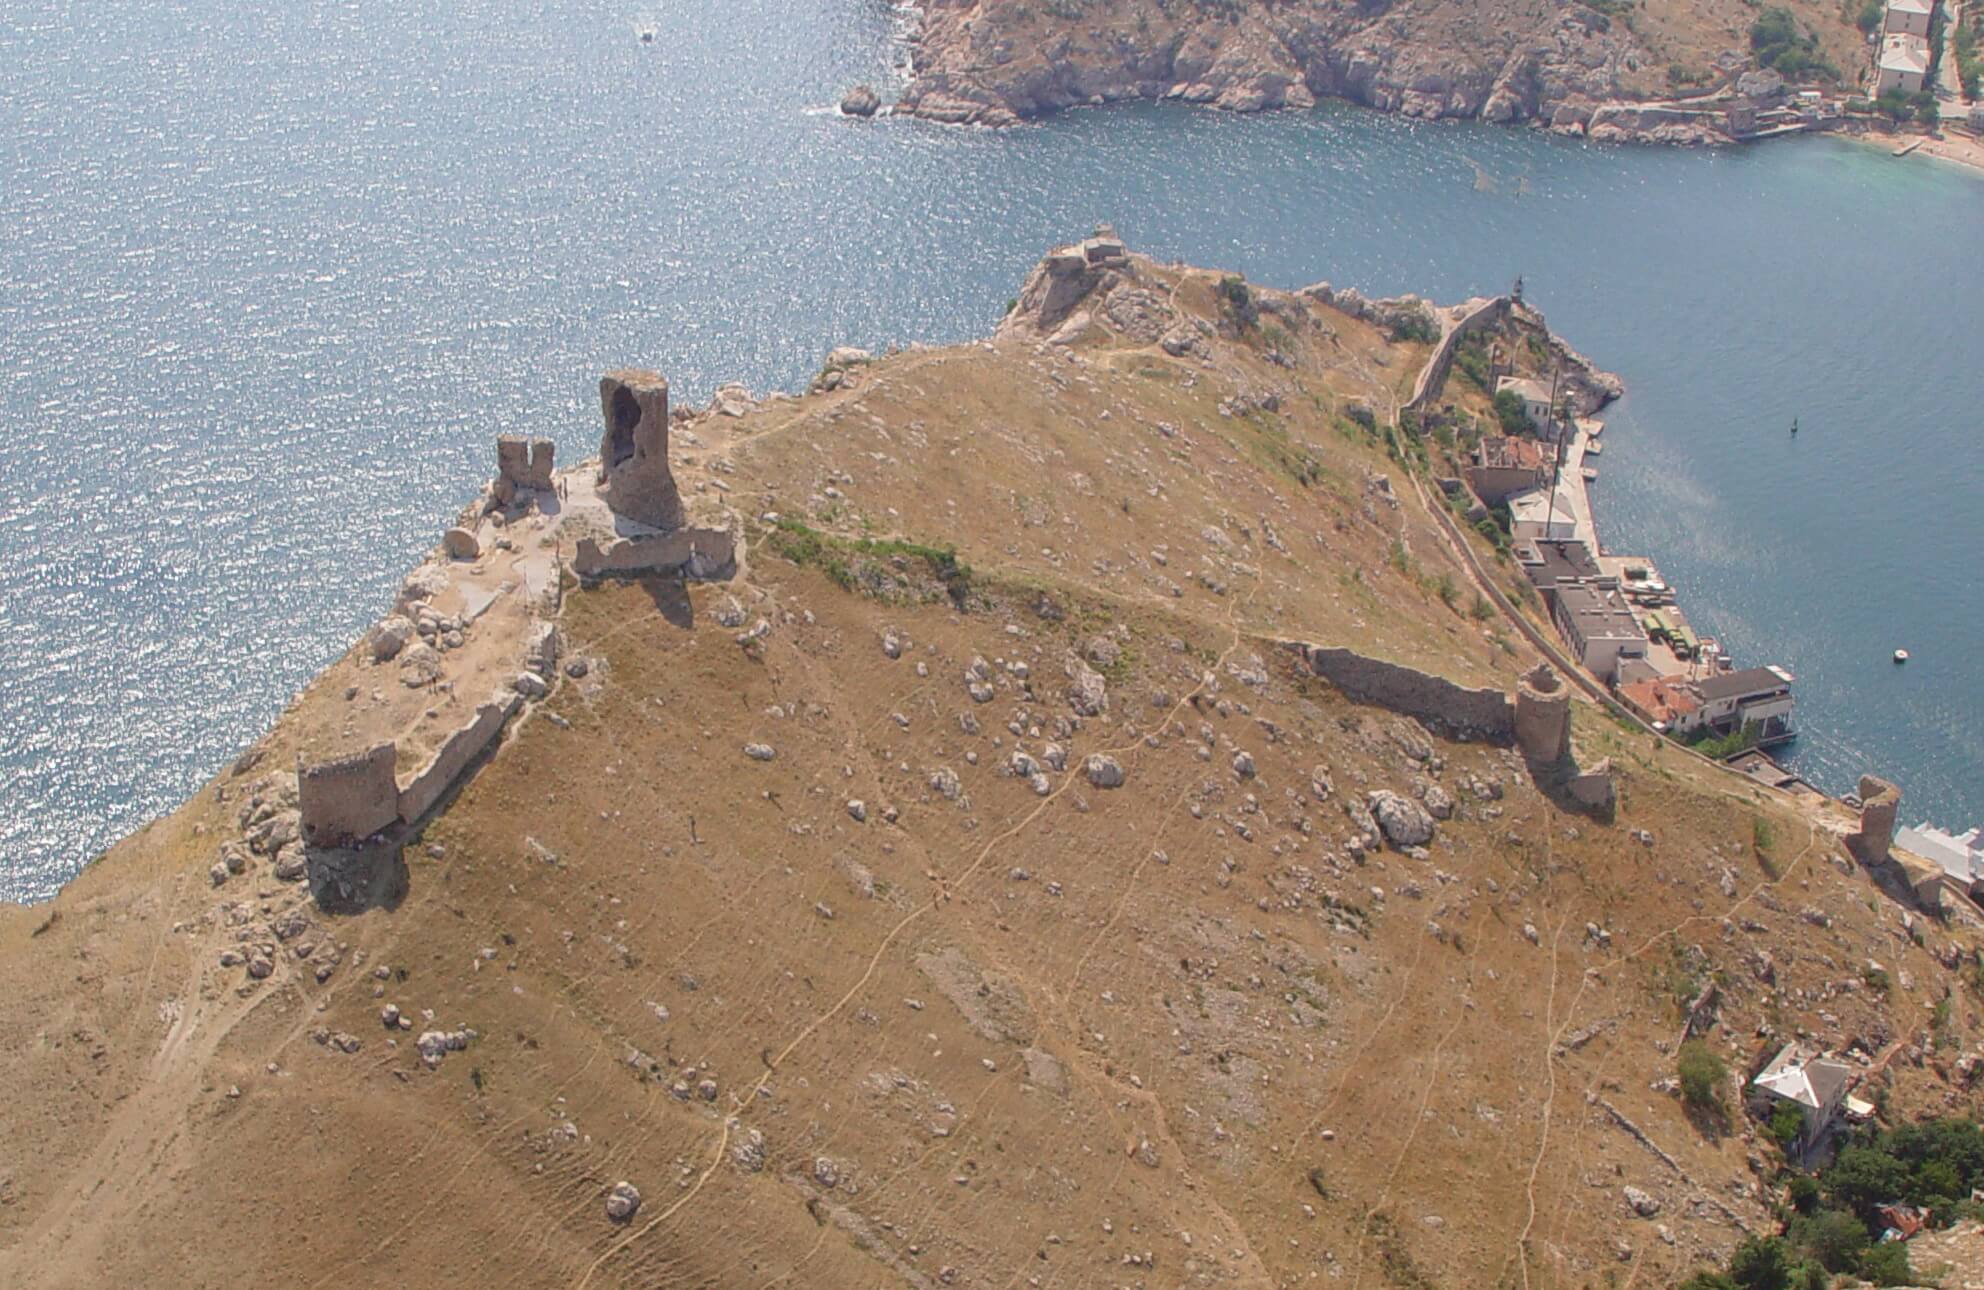 Генуэзская крепость Чембало